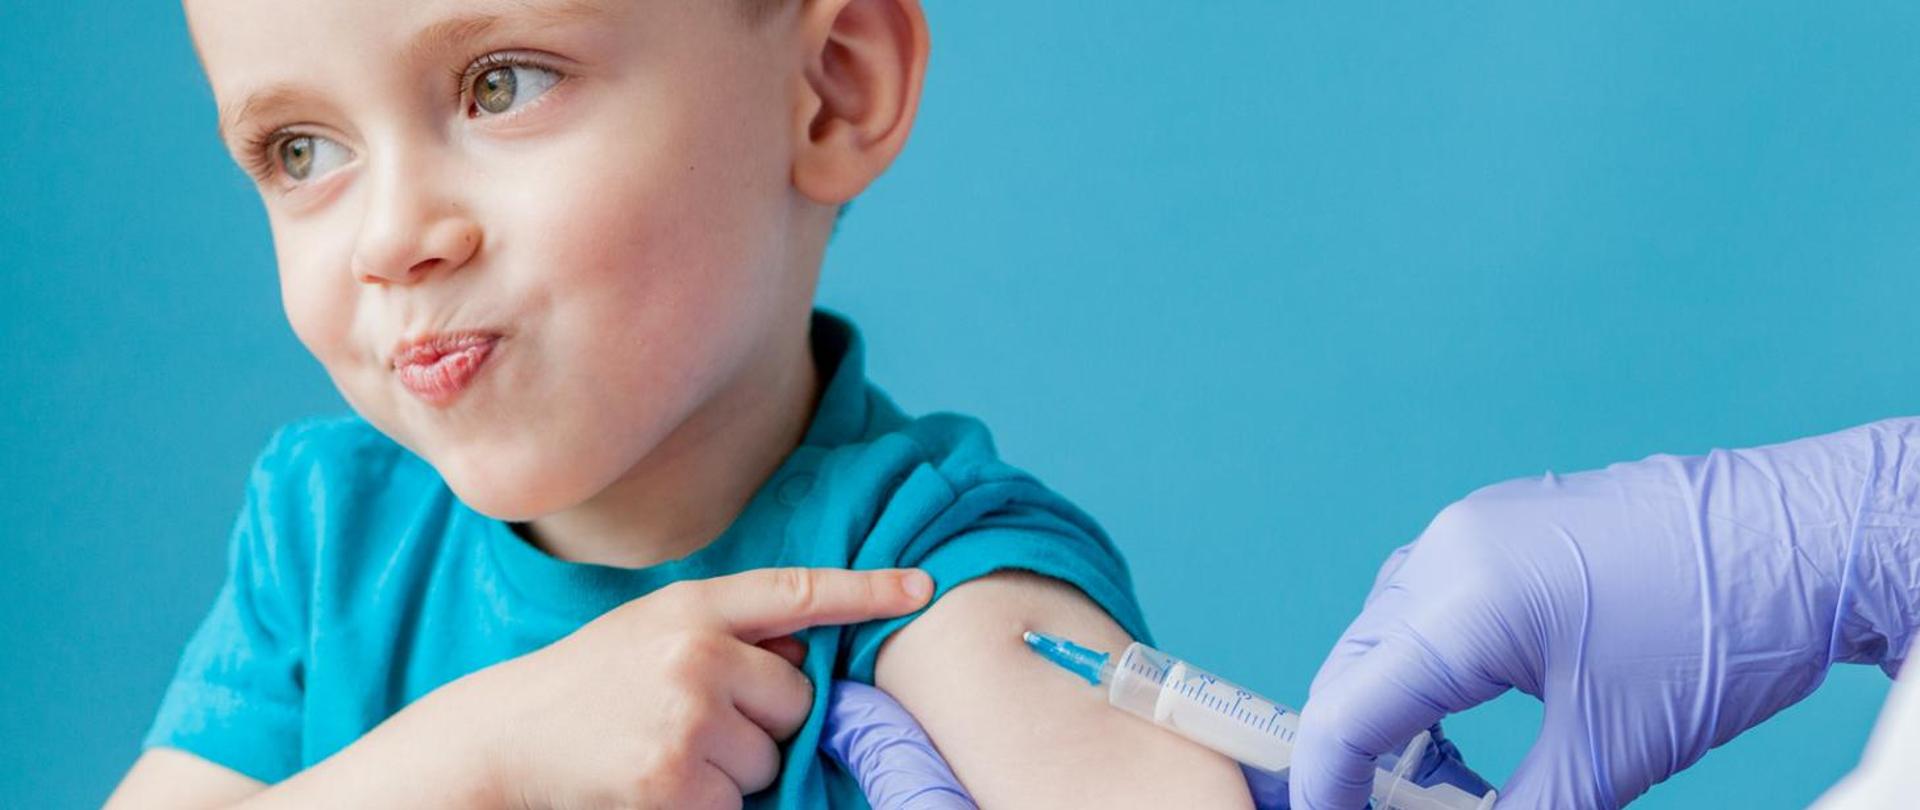 Rodzice i opiekunowie - nie odkładajcie decyzji o szczepieniu dzieci